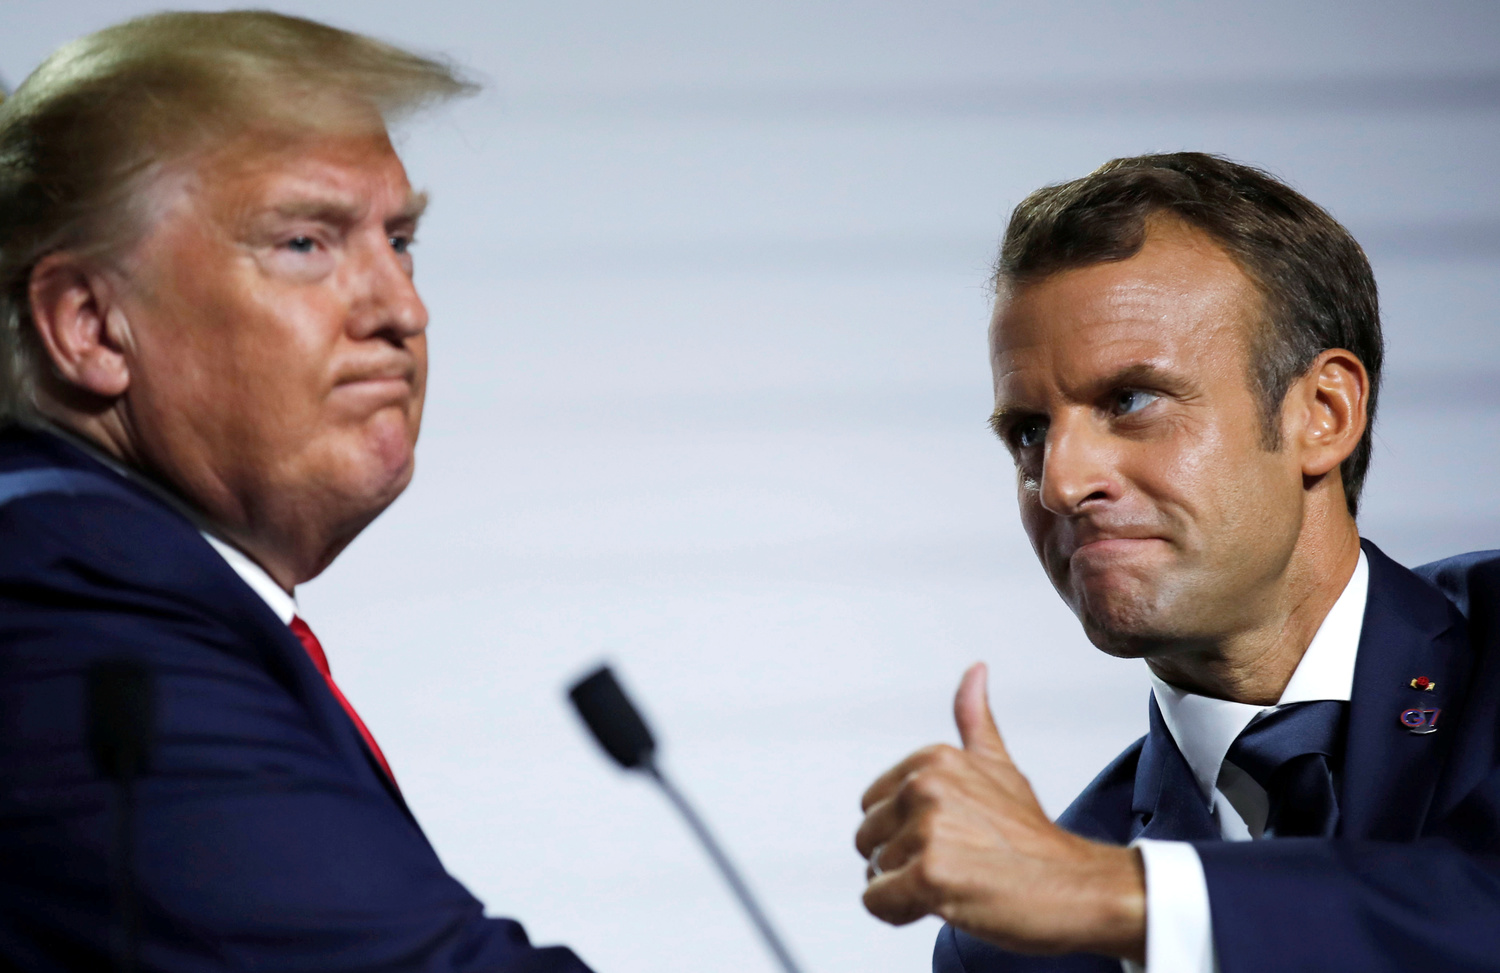 Il Presidente francese Emmanuel Macron e il Presidente degli Stati Uniti Donald Trump reagiscono durante una conferenza stampa al termine del vertice del G7 a Biarritz, Francia, 26 agosto 2019. REUTERS/Carlos Barria